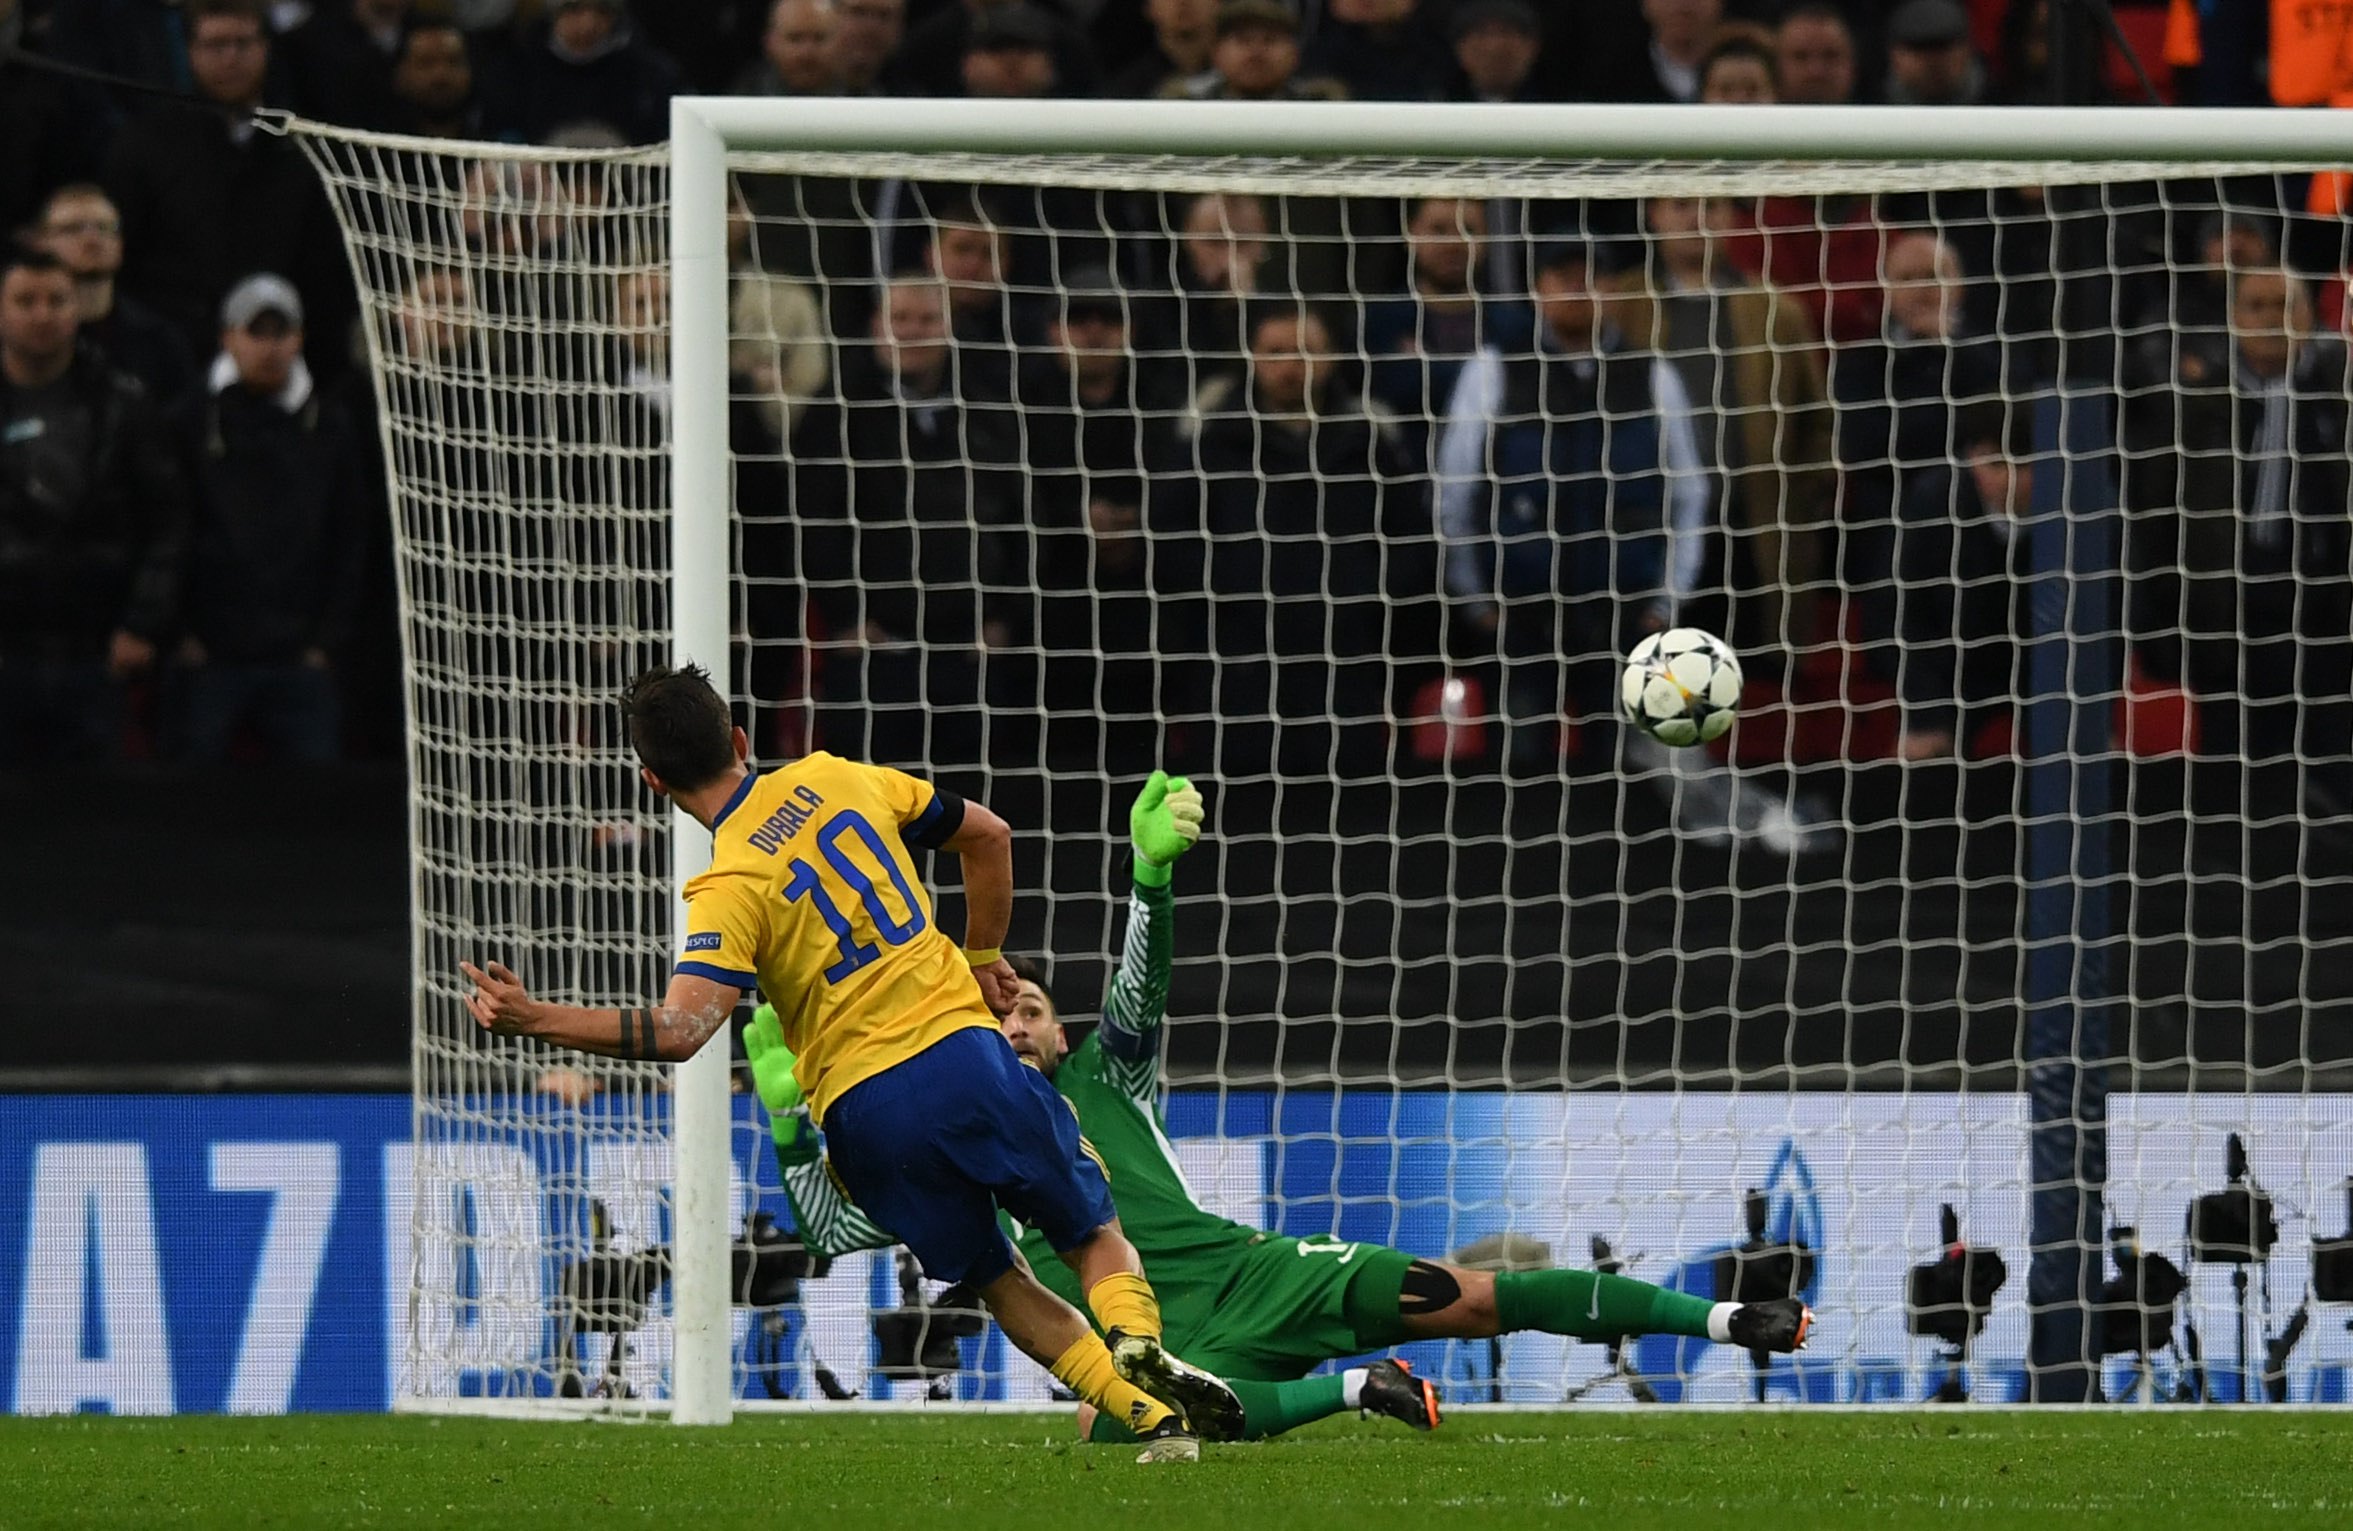 Dybala erzielte den Siegtreffer gegen Tottenham in der Champions League, nachdem er Poser besucht hatte, um dessen Genesung zu unterstützen